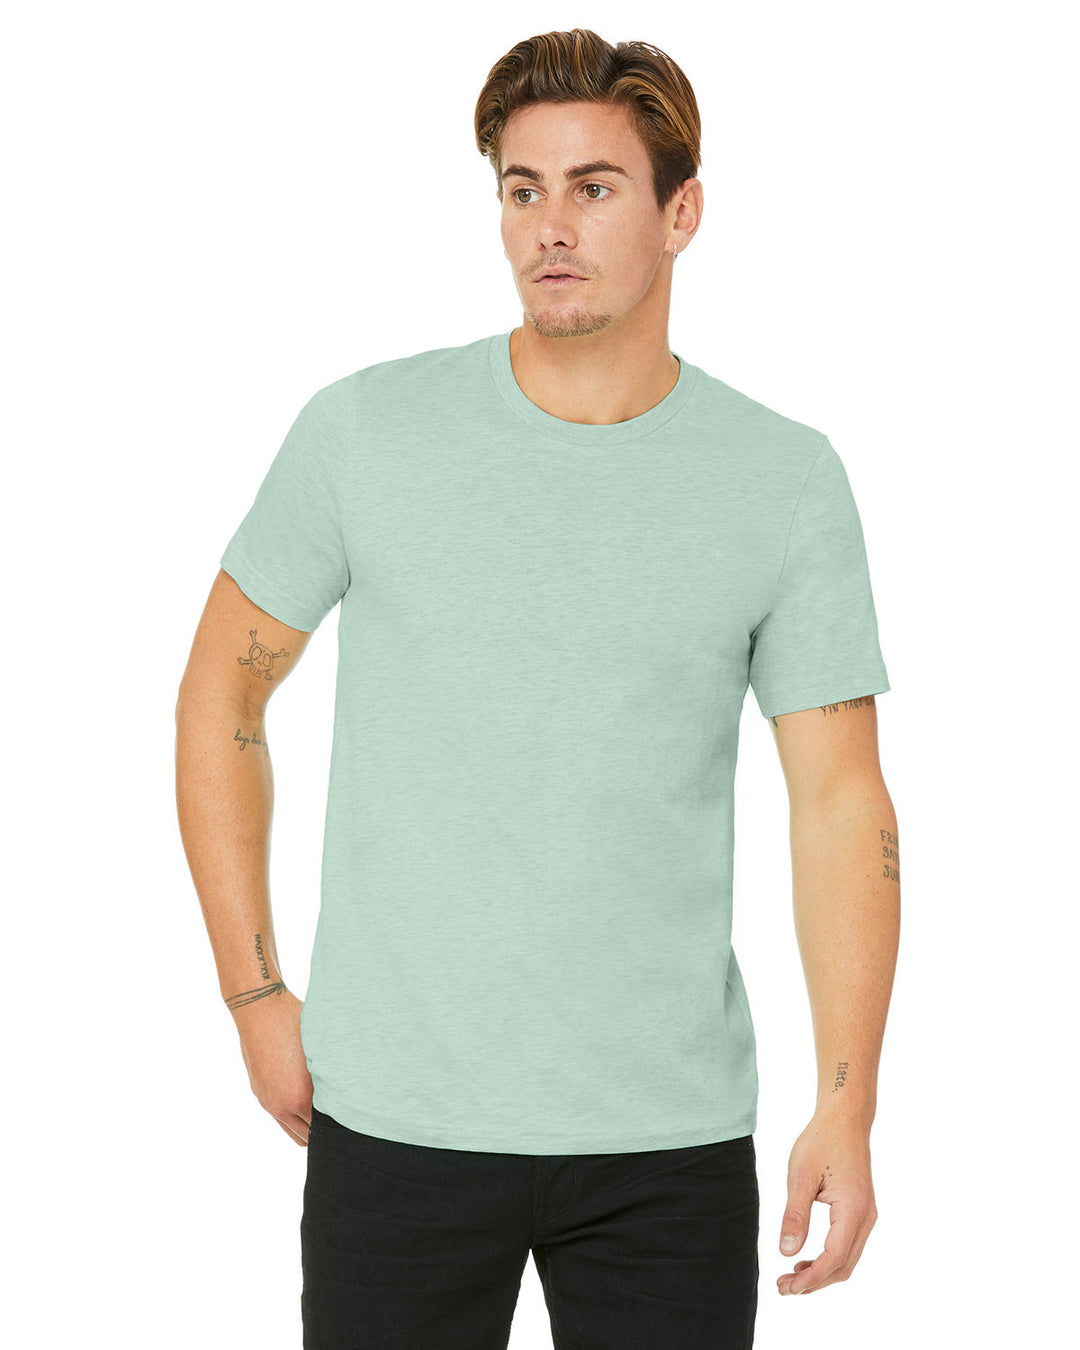 Unisex Heather CVC T-Shirt (3001CVC)